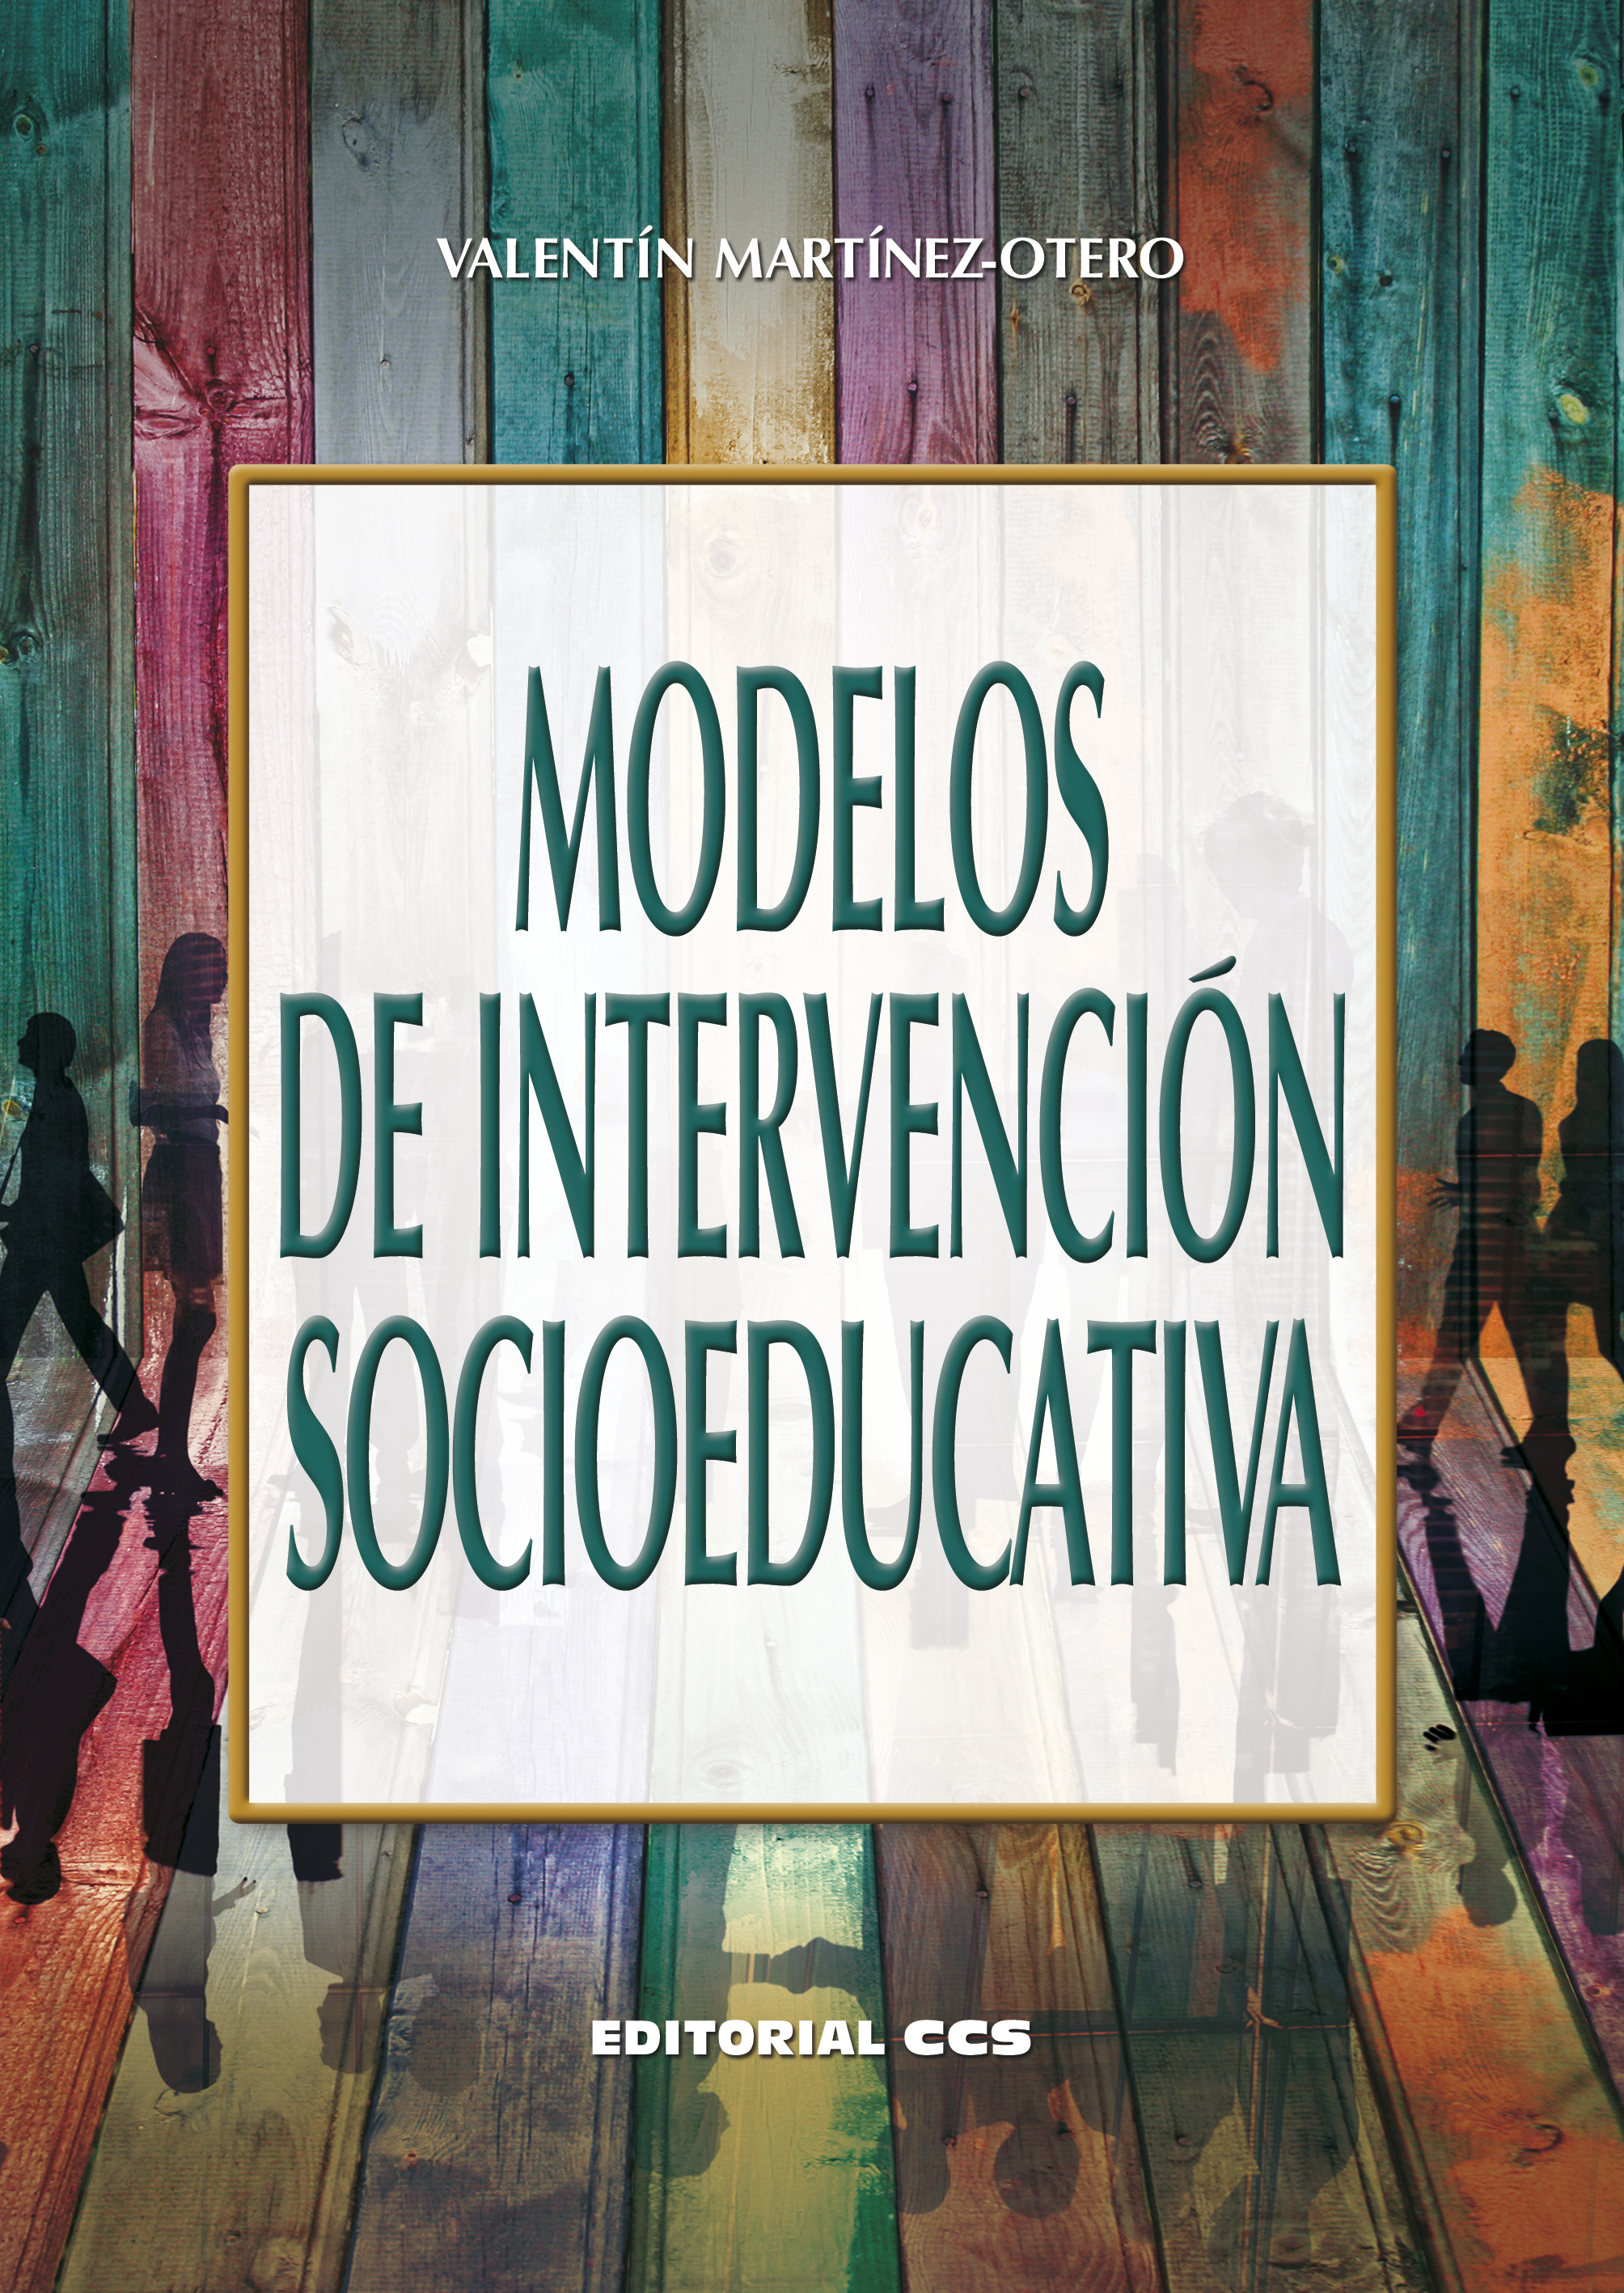 Editorial CCS - Libro: MODELOS DE INTERVENCIÓN SOCIOEDUCATIVA